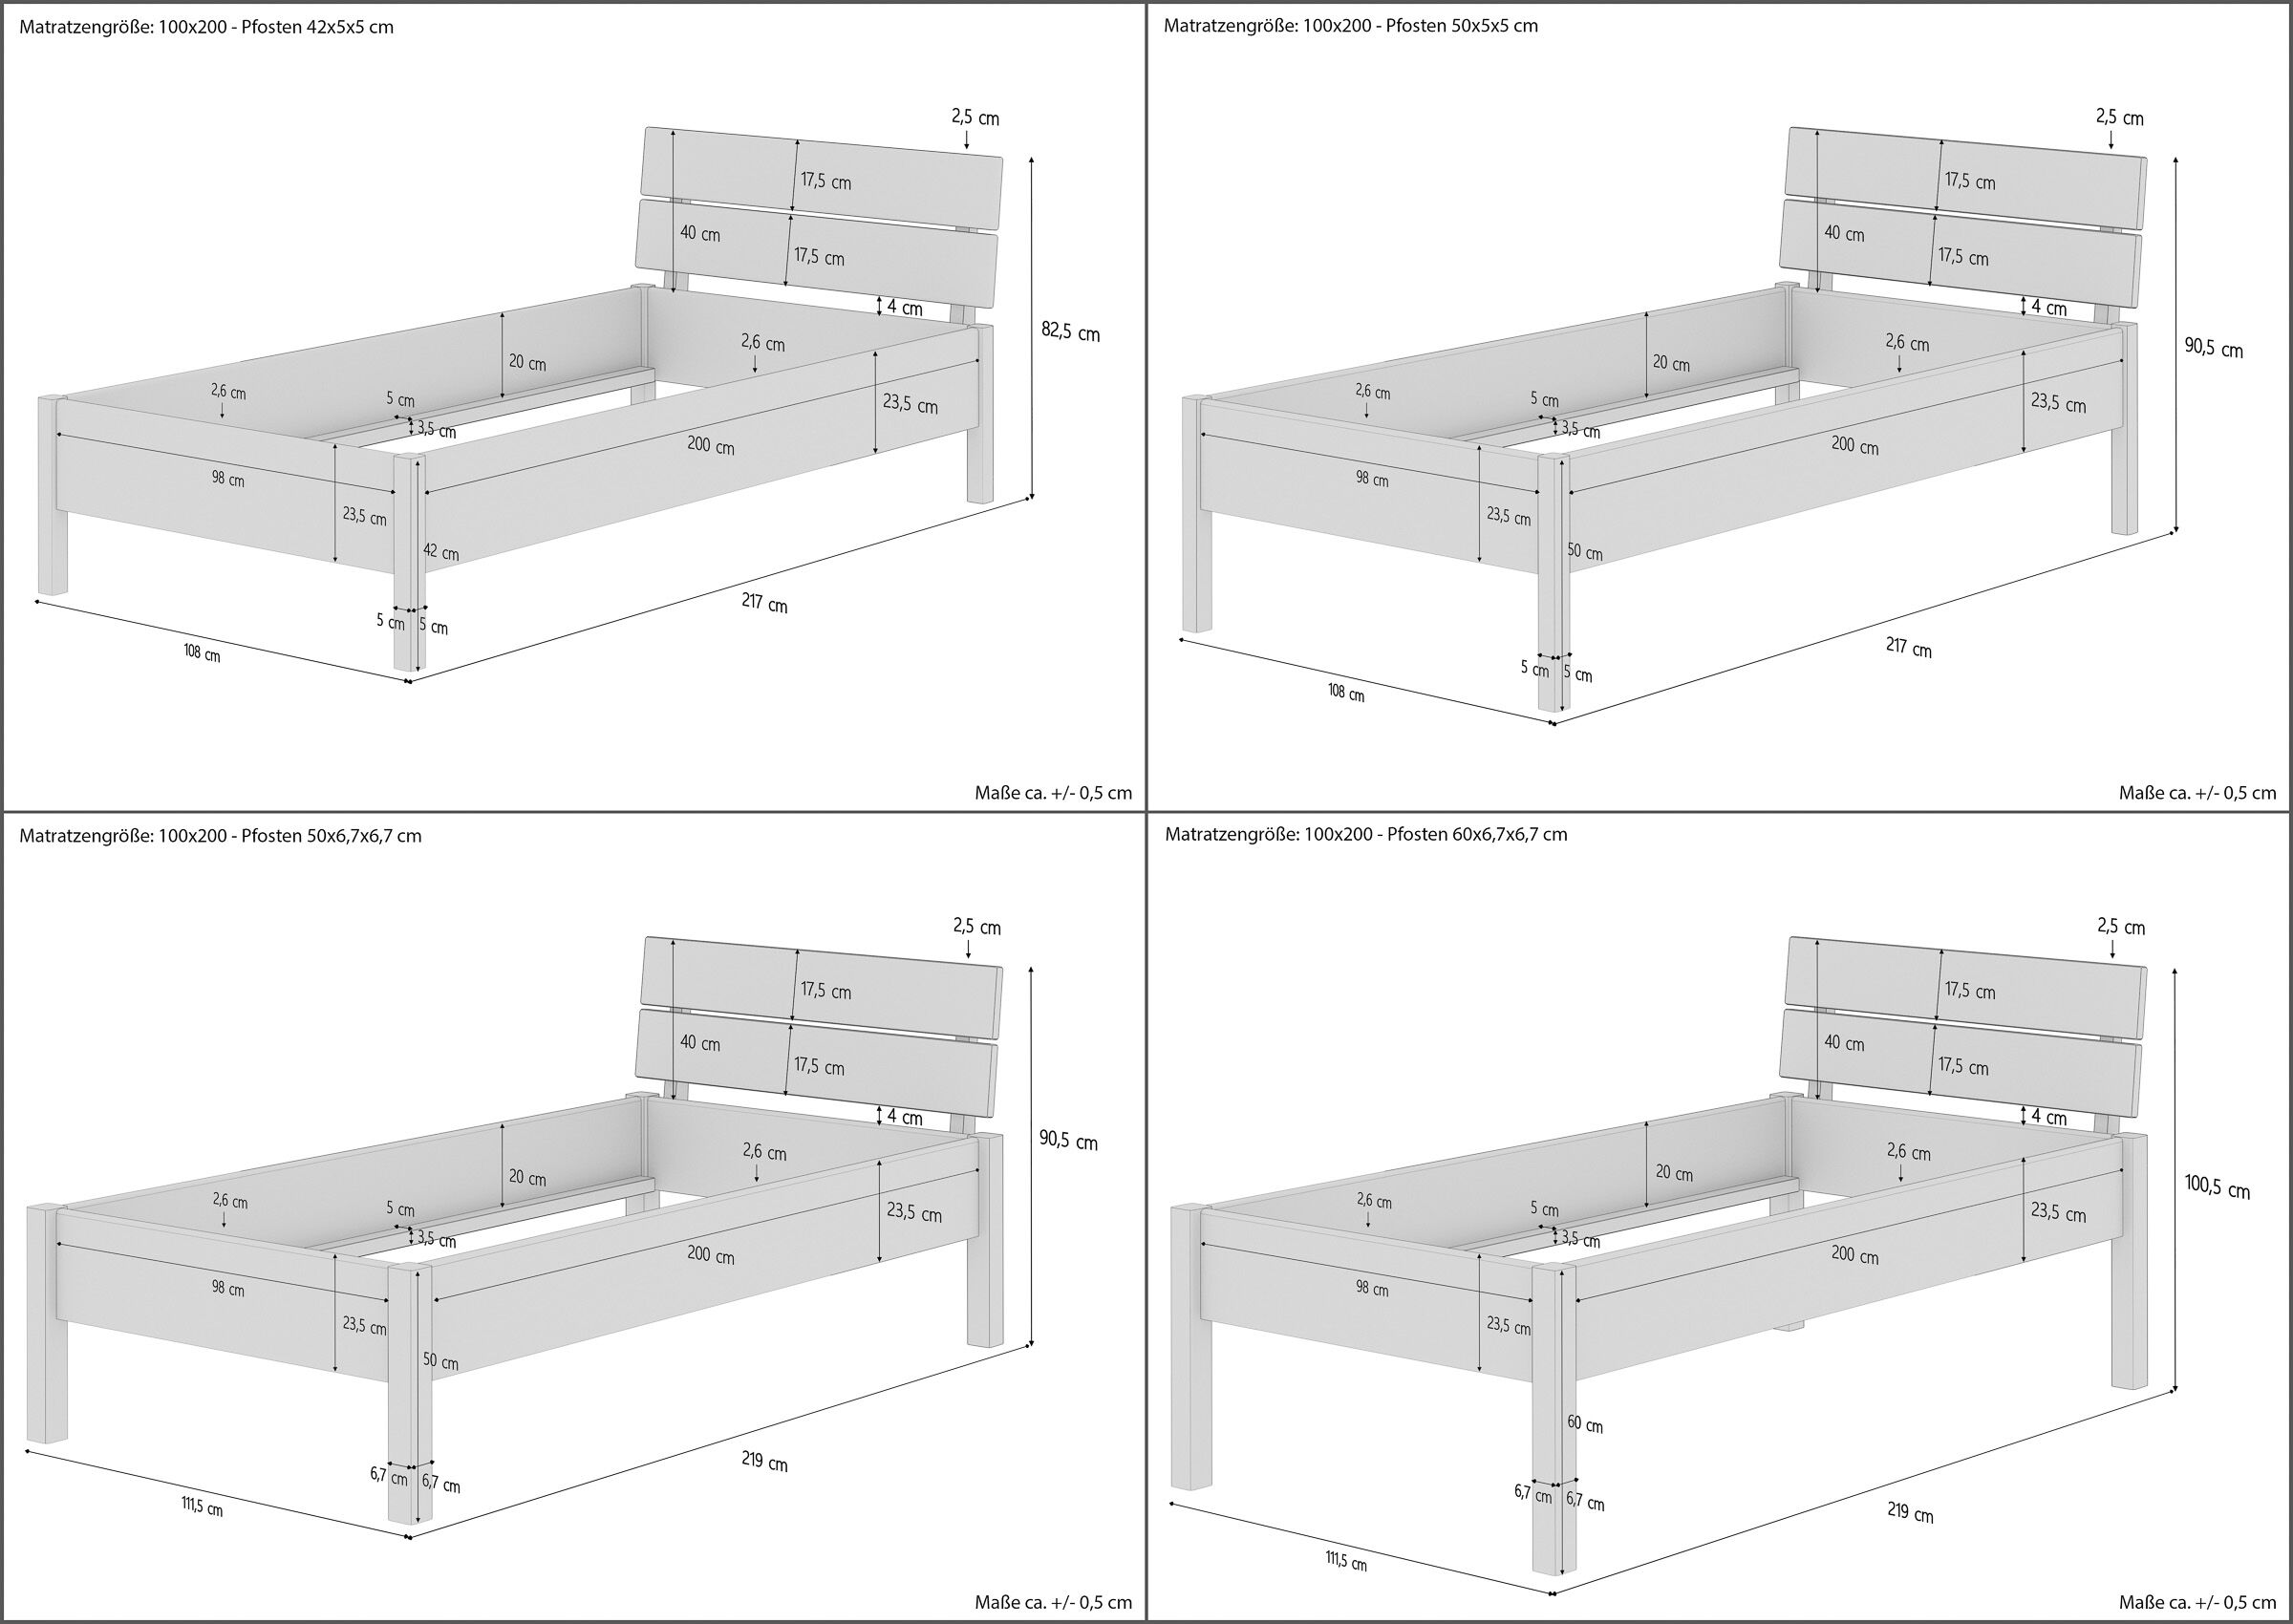 Metallfreies Einzelbett Eschenholz mit Rost 100x200 in drei Höhen V-60.90-10K